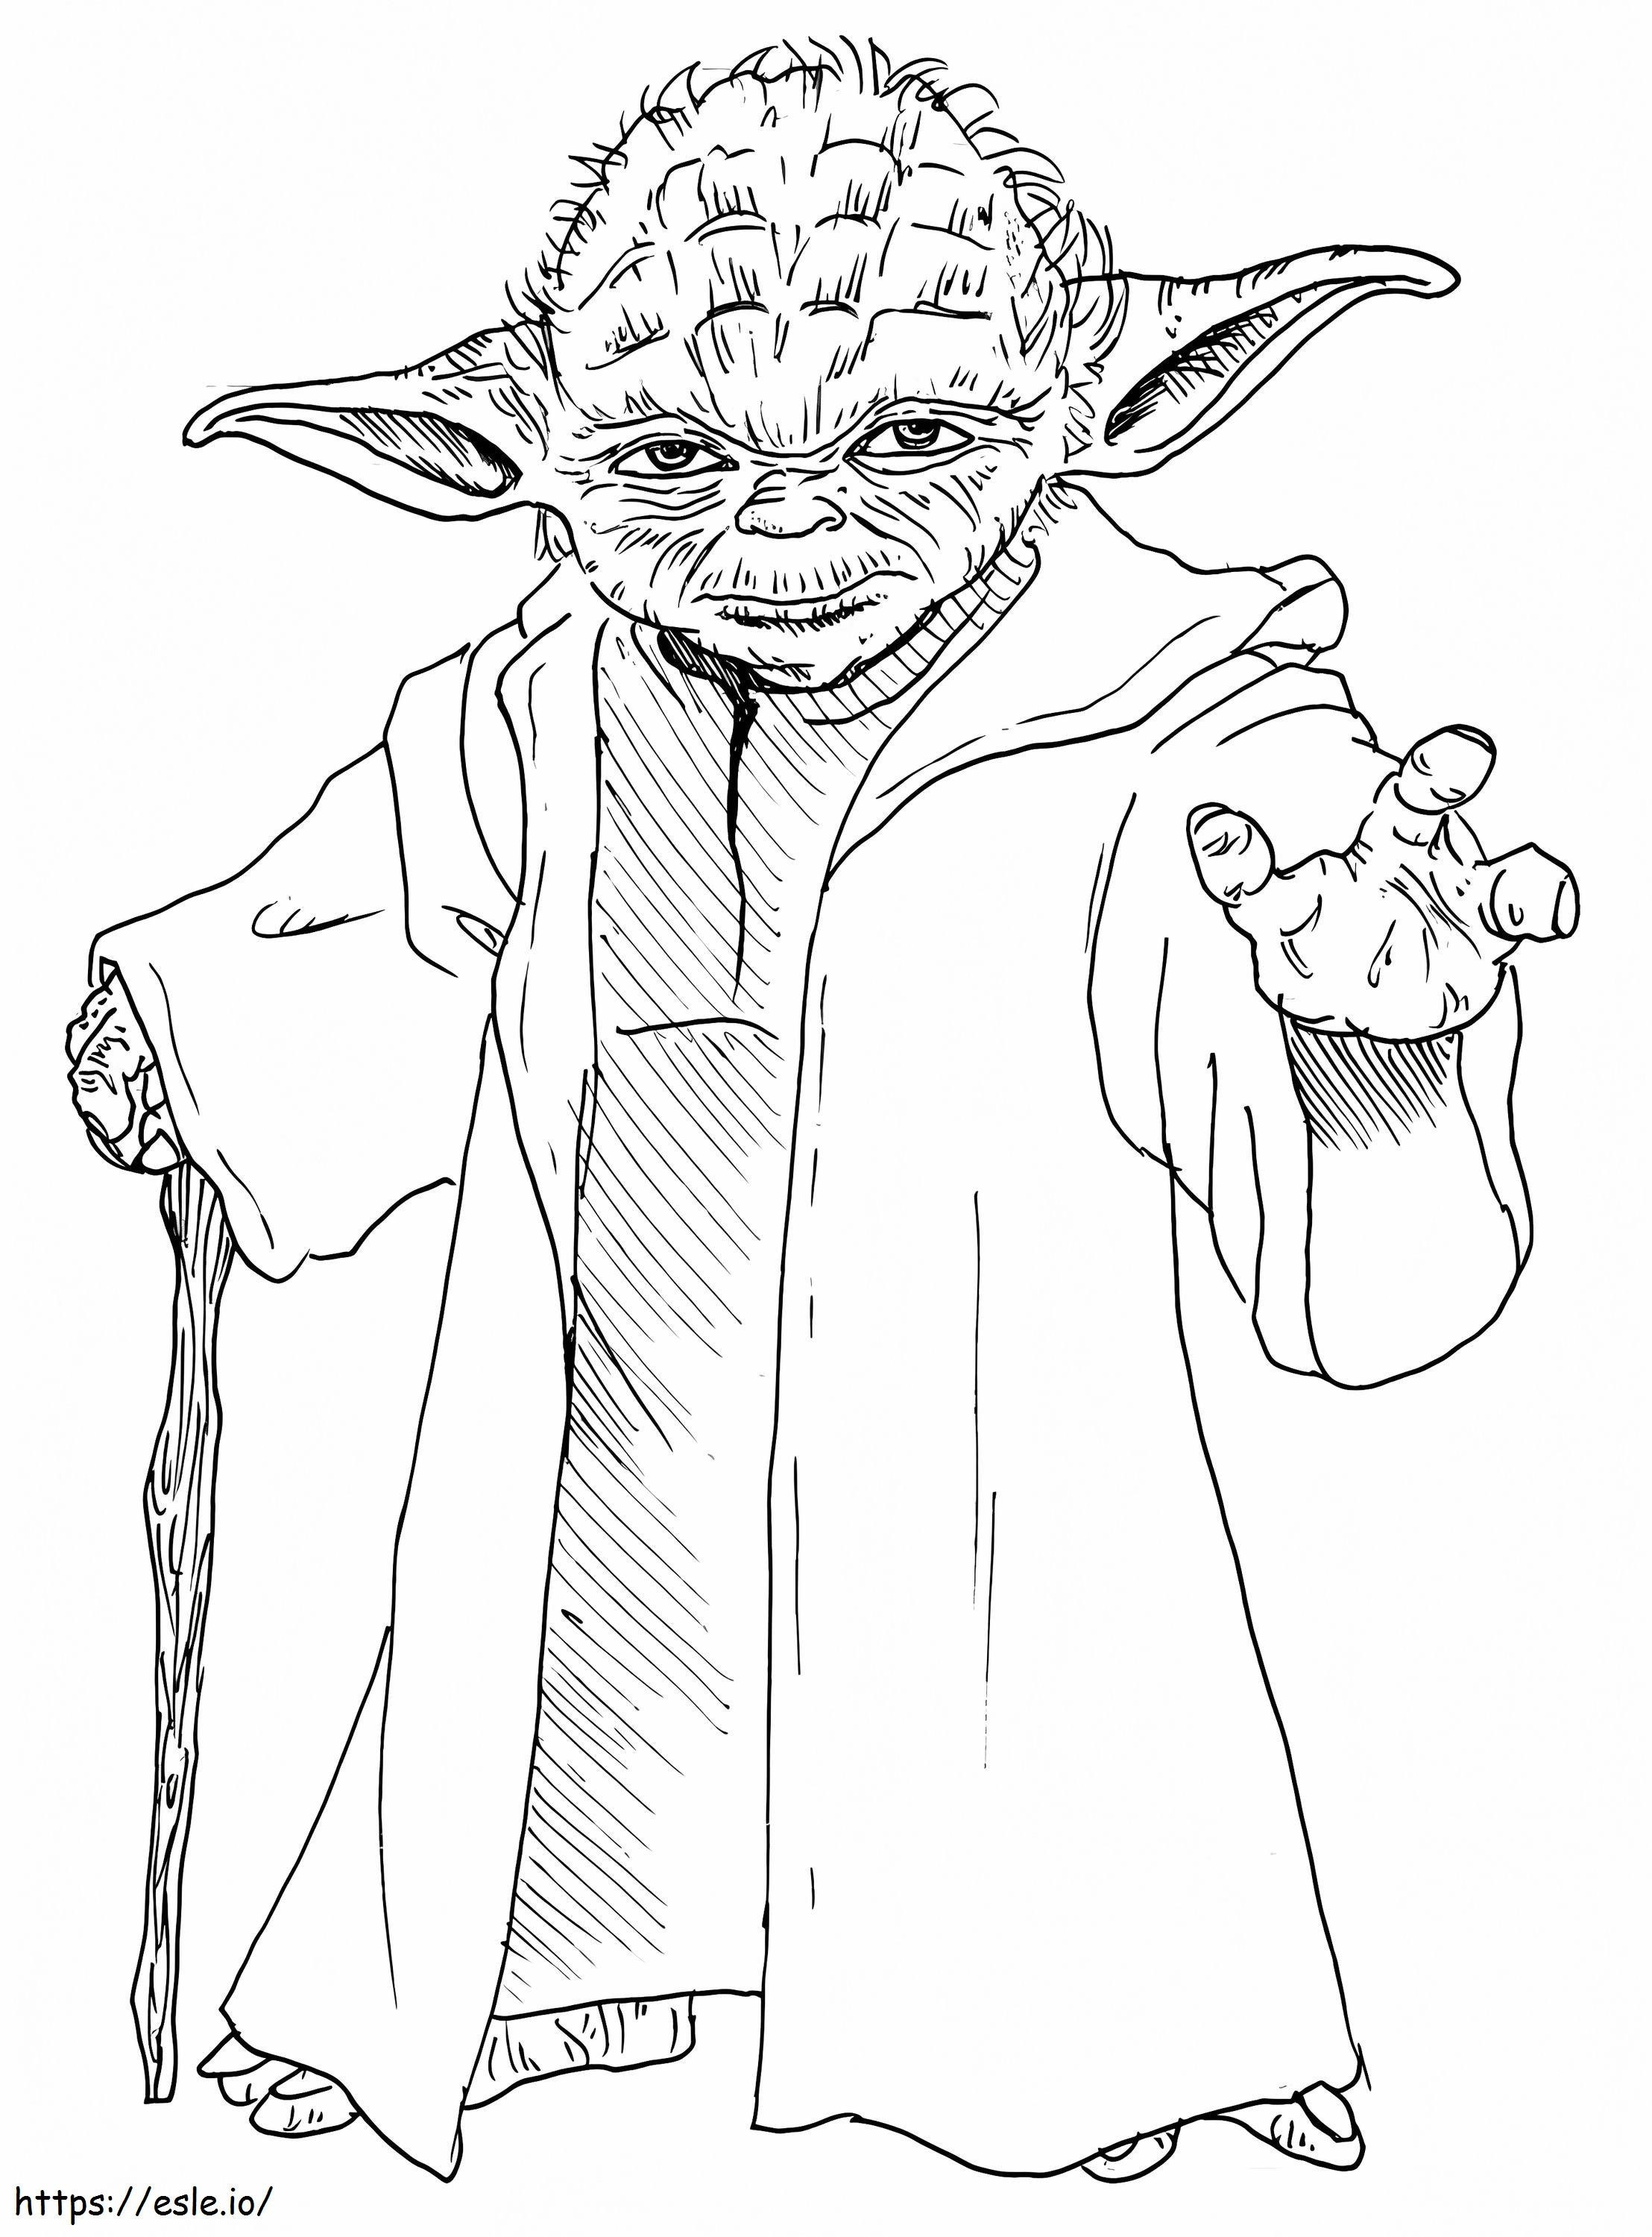 Meister Yoda aus Star Wars ausmalbilder